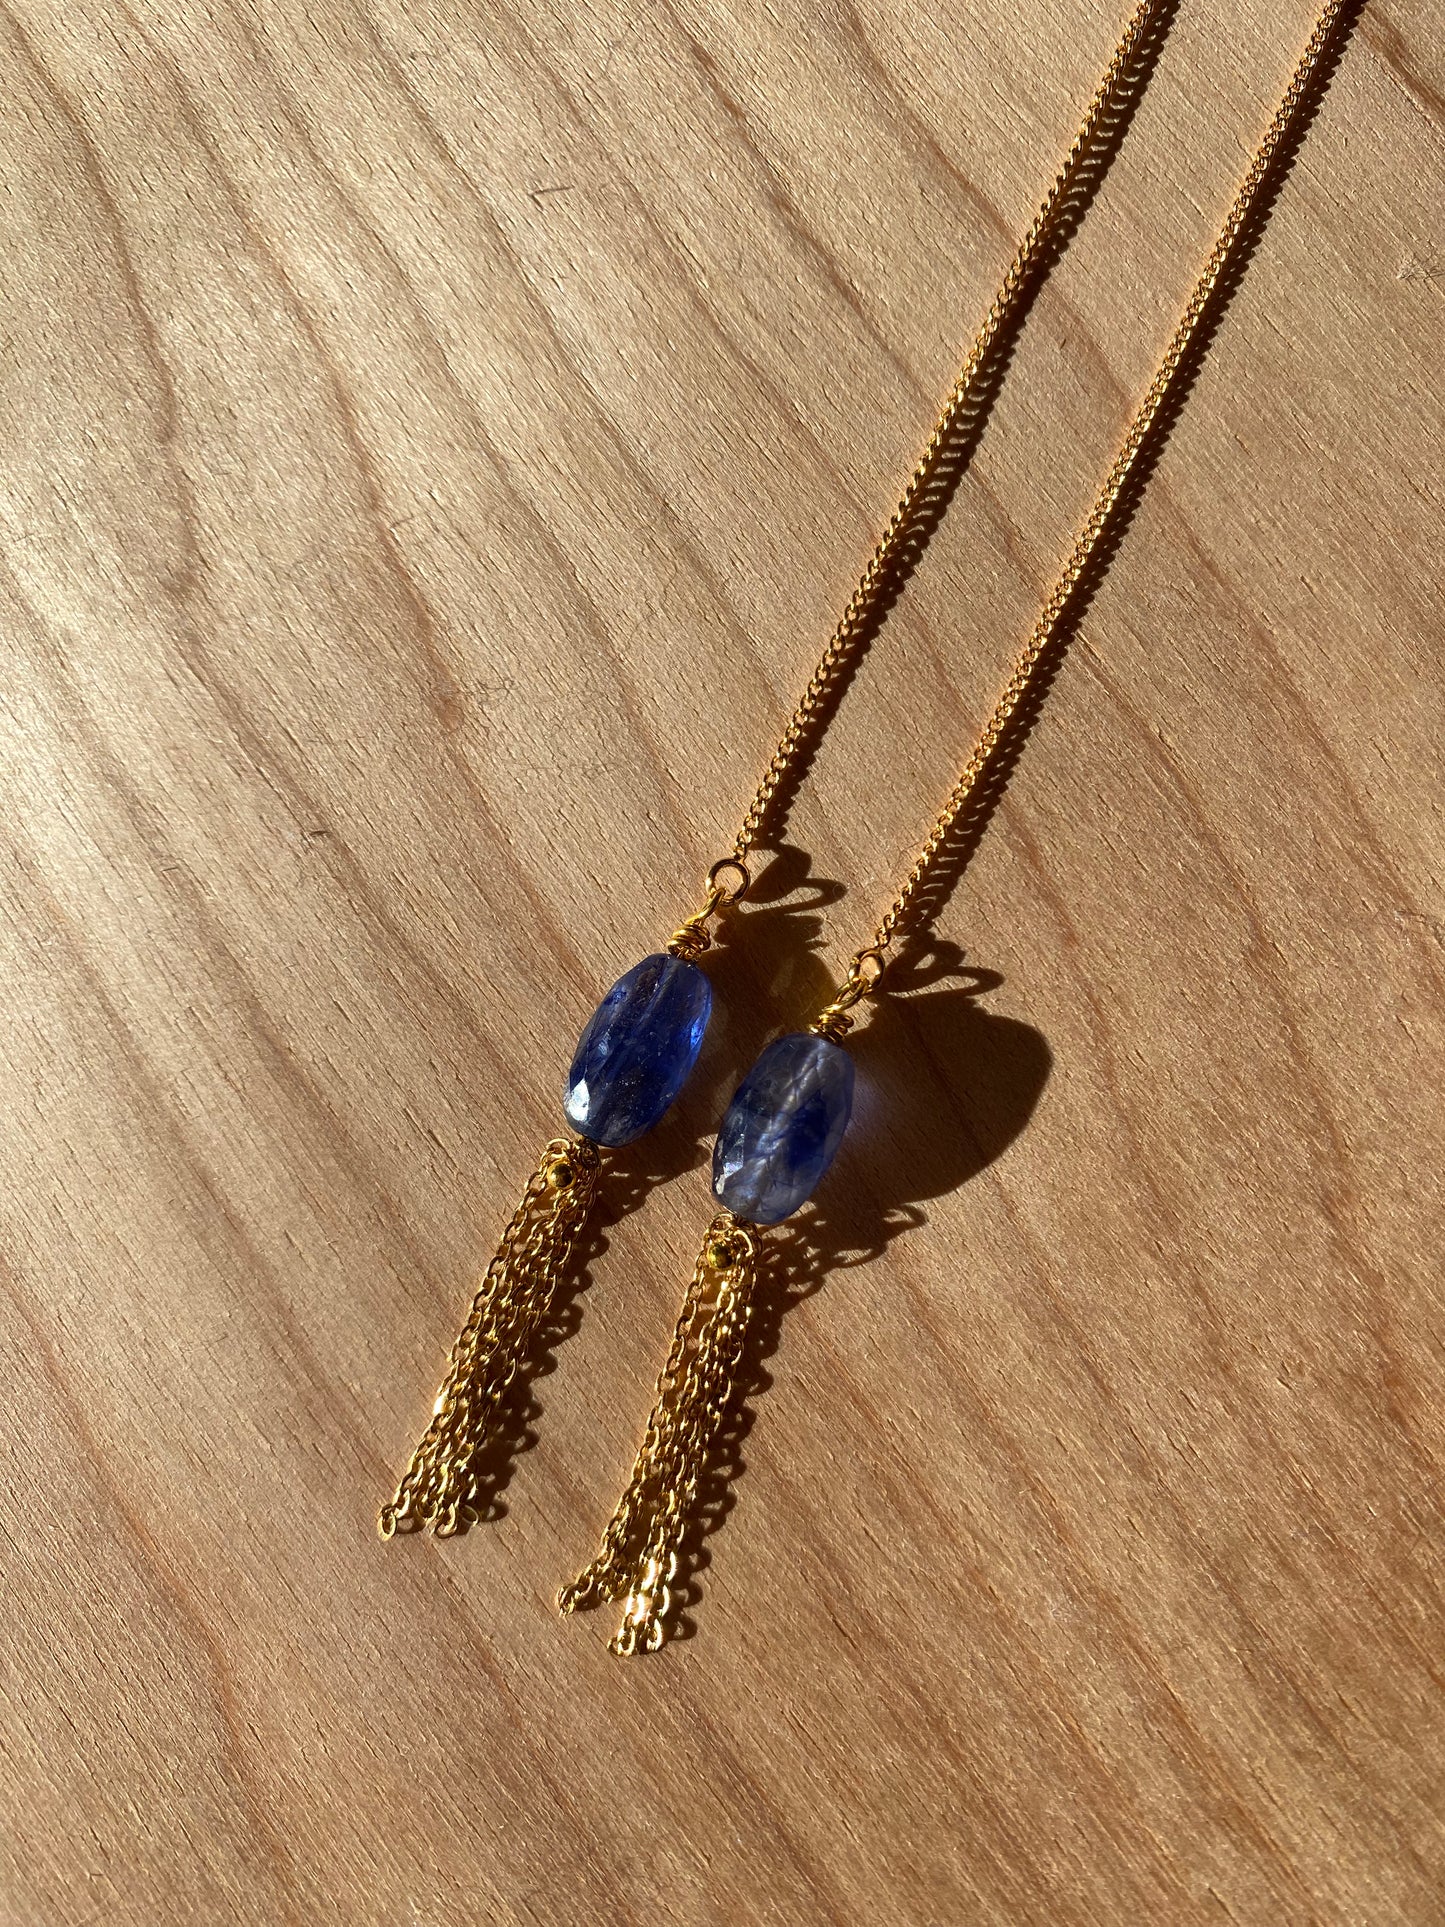 Wildflower sapphire earrings